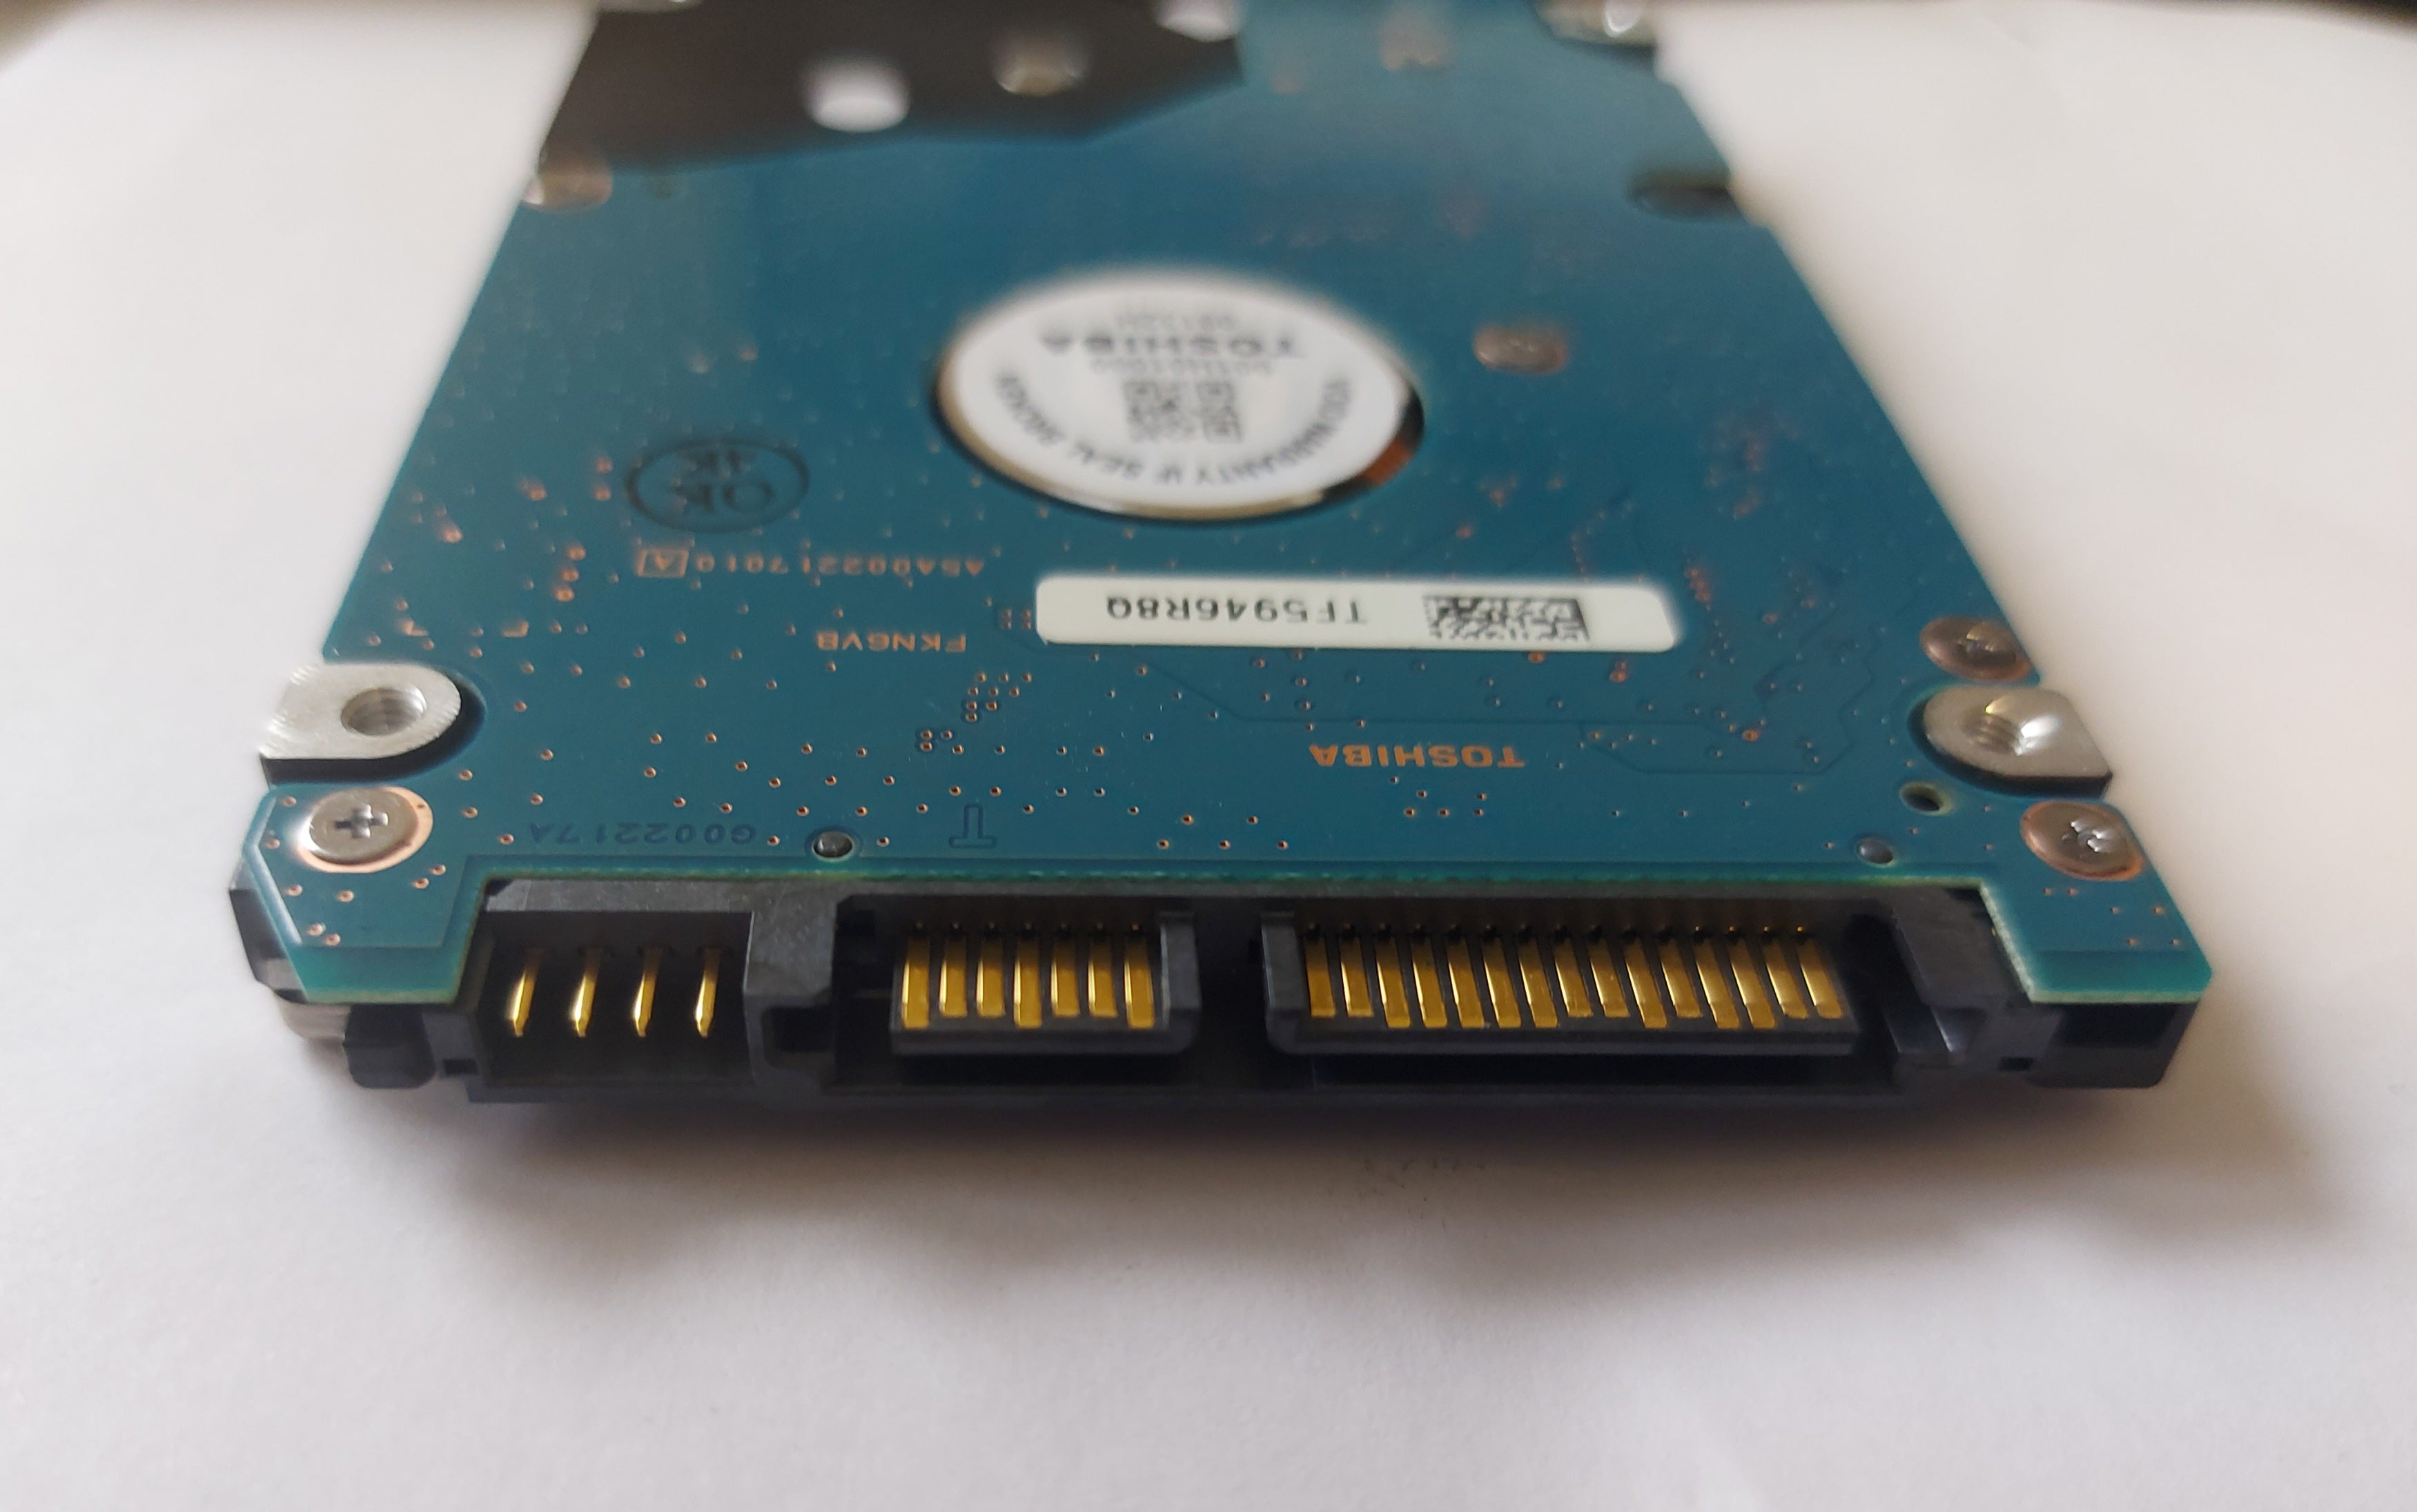 Toshiba 250GB 5400RPM SATA 2.5in HDD ( MK2552GSX ) USED